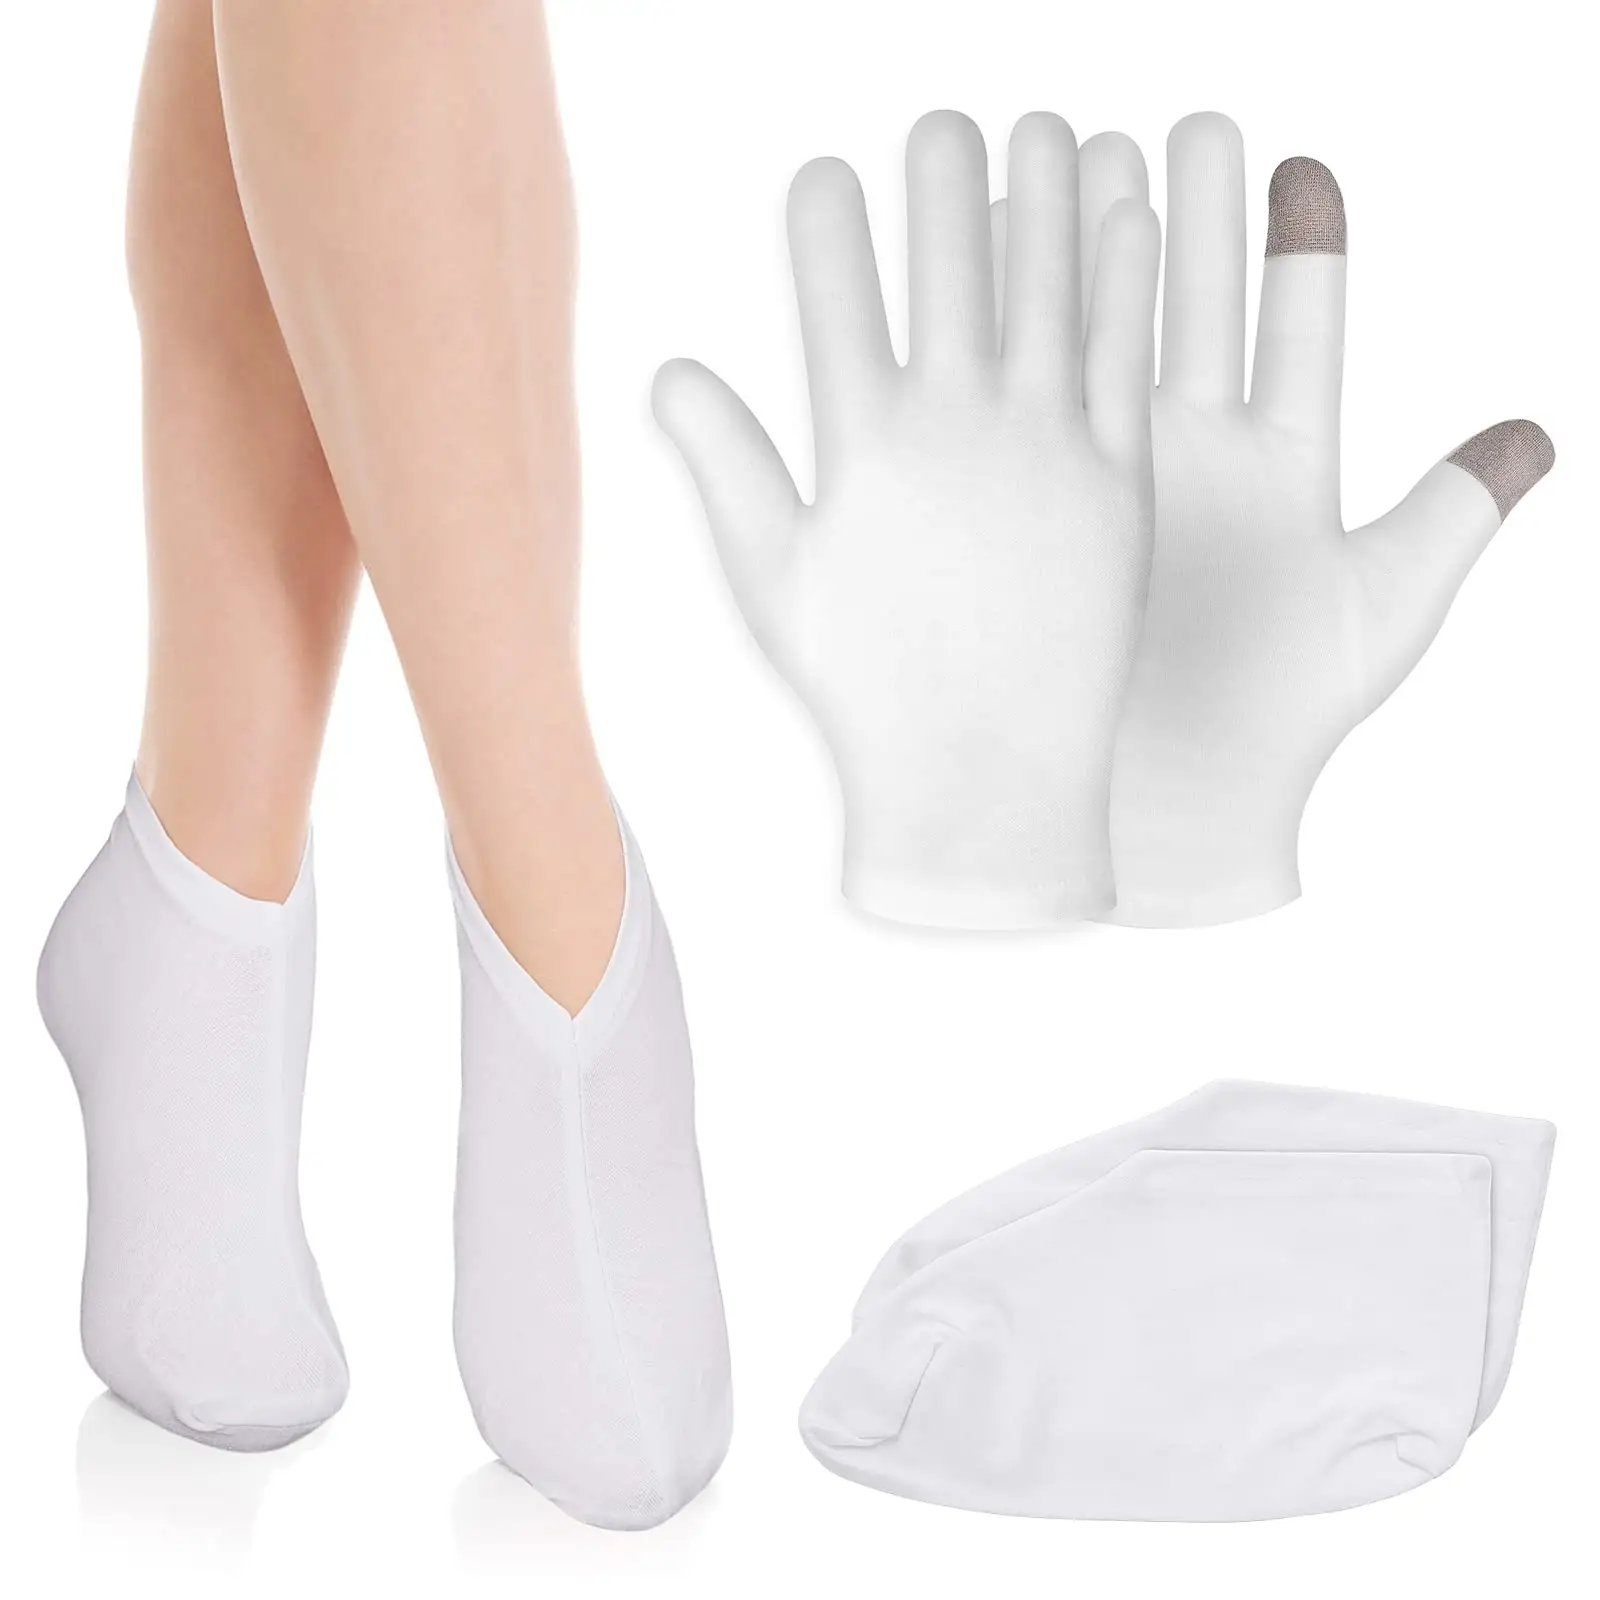 Adoucir la réparation blanchir la peau Gel traitement de l'humidité Spa soins des pieds chaussettes et écran tactile hydratant eczéma gants